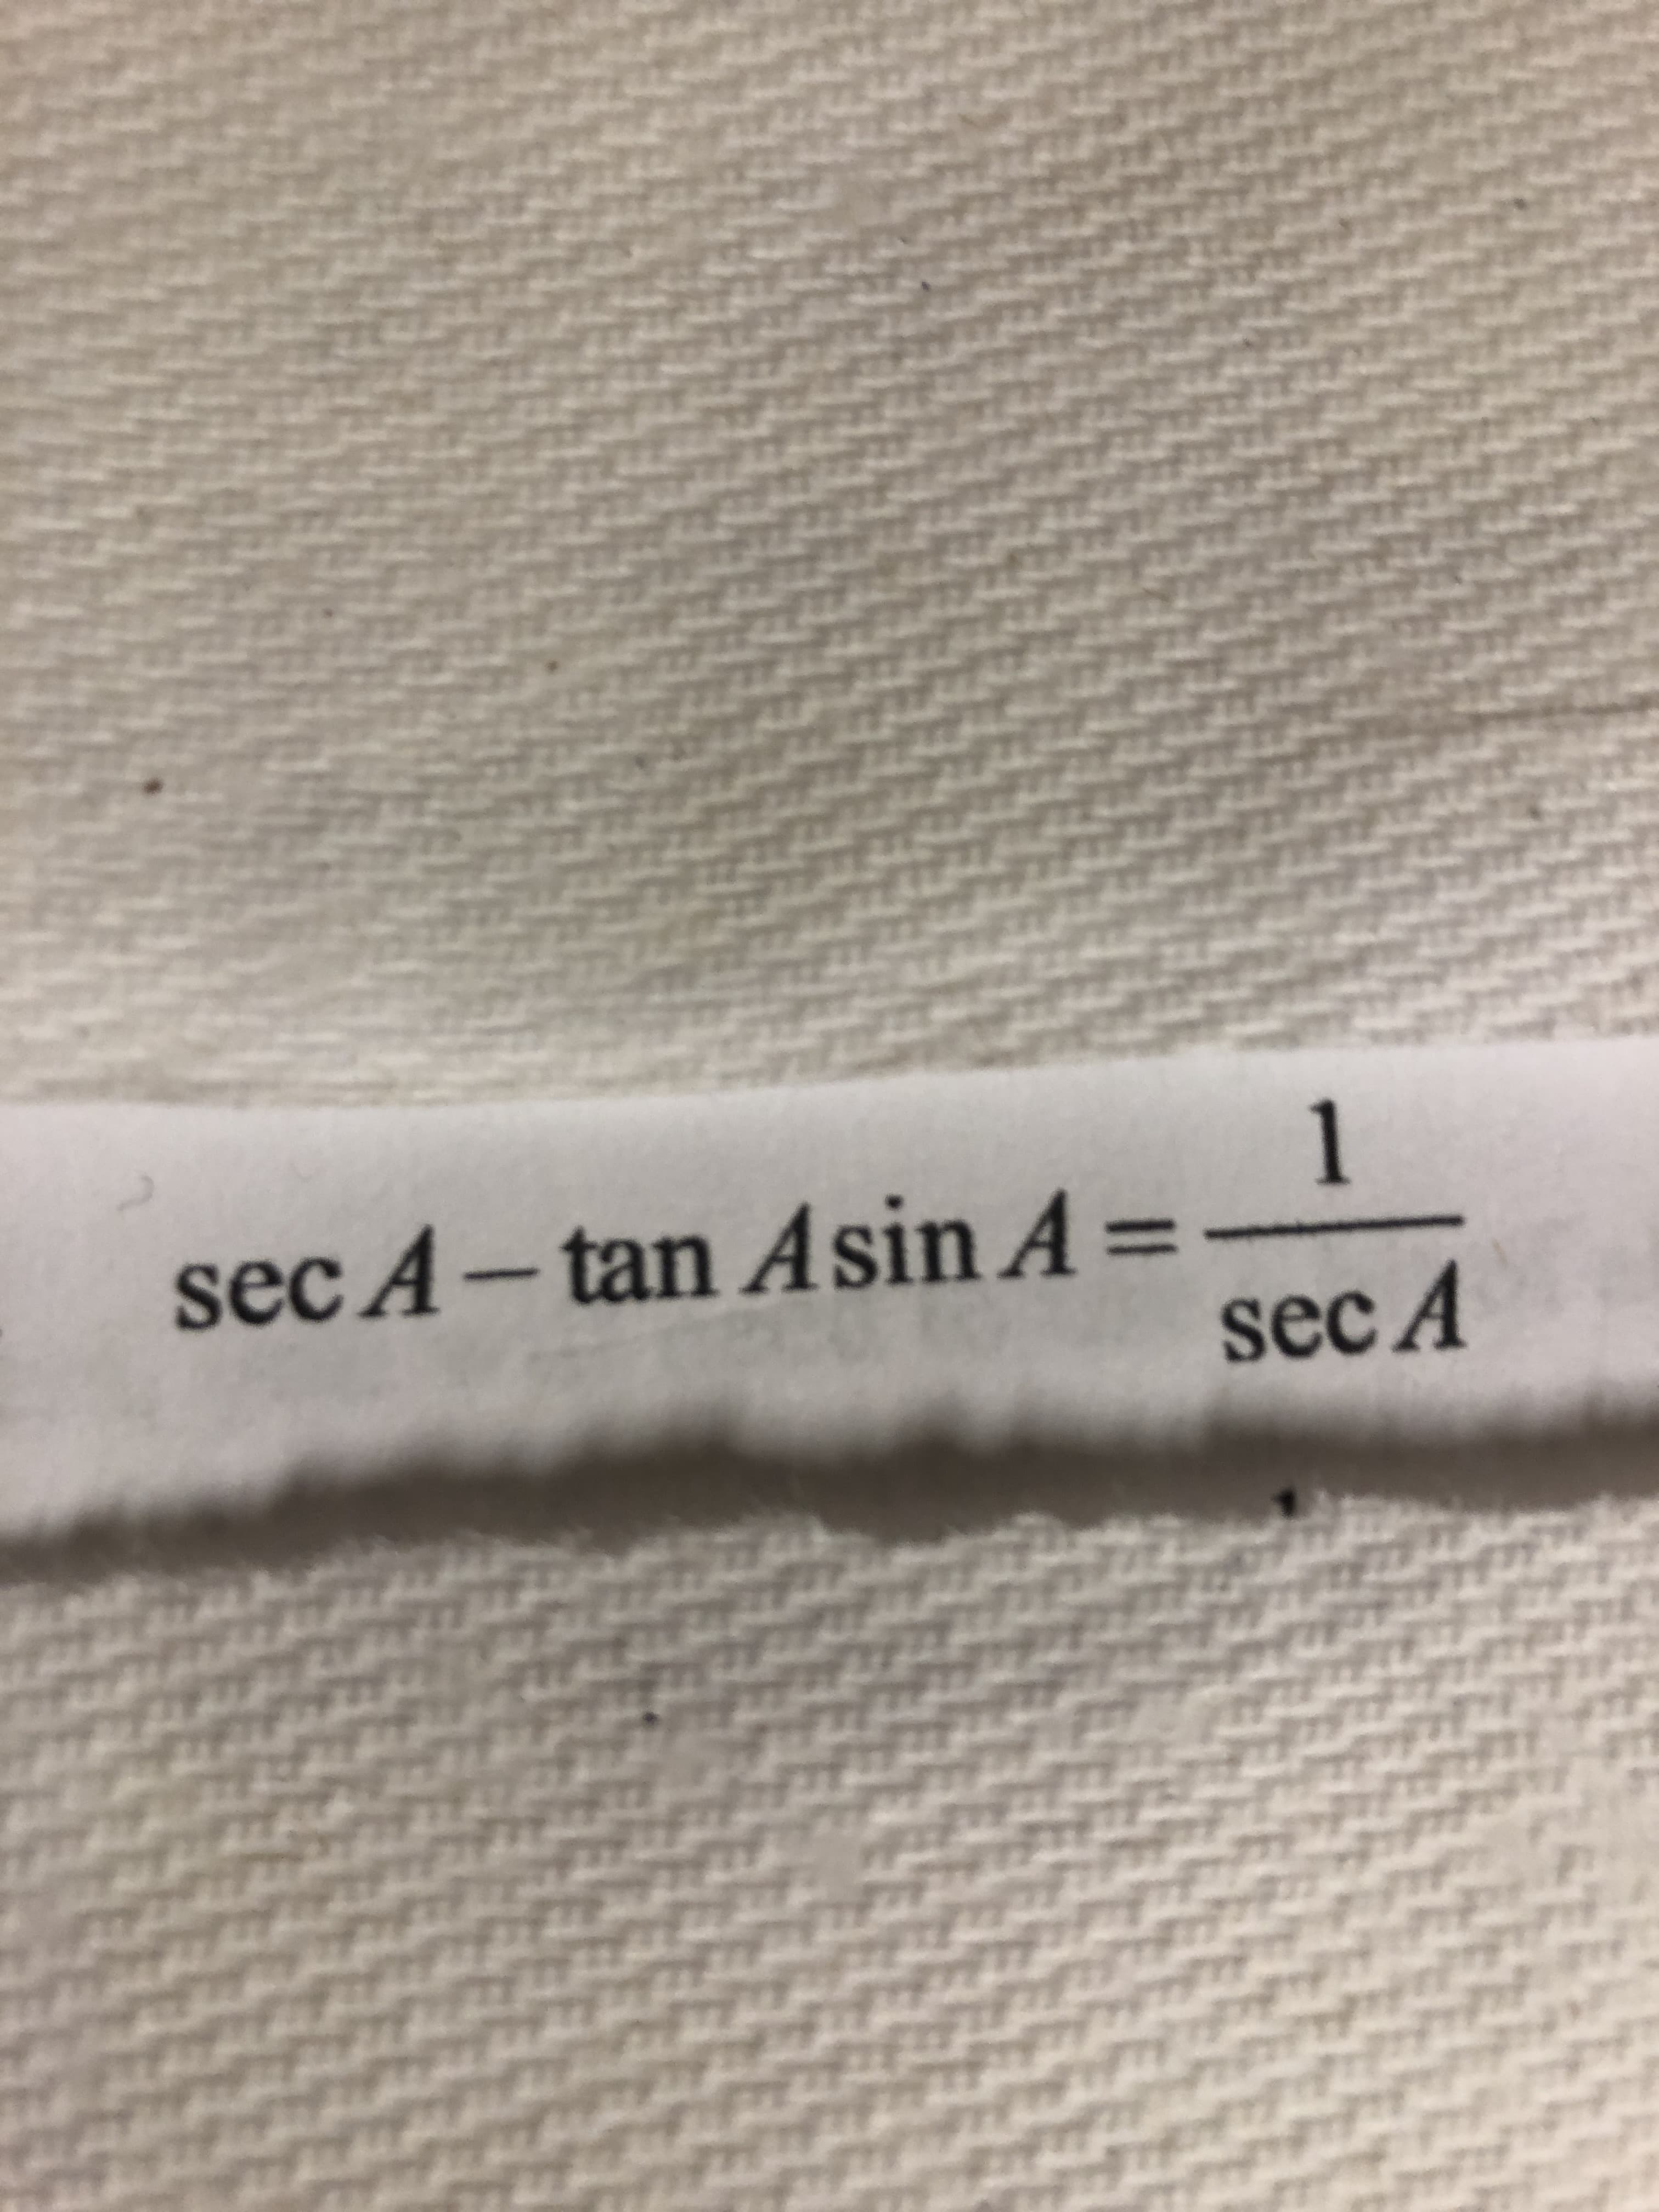 1
sec A-tan Asin A =
%3D
sec A
